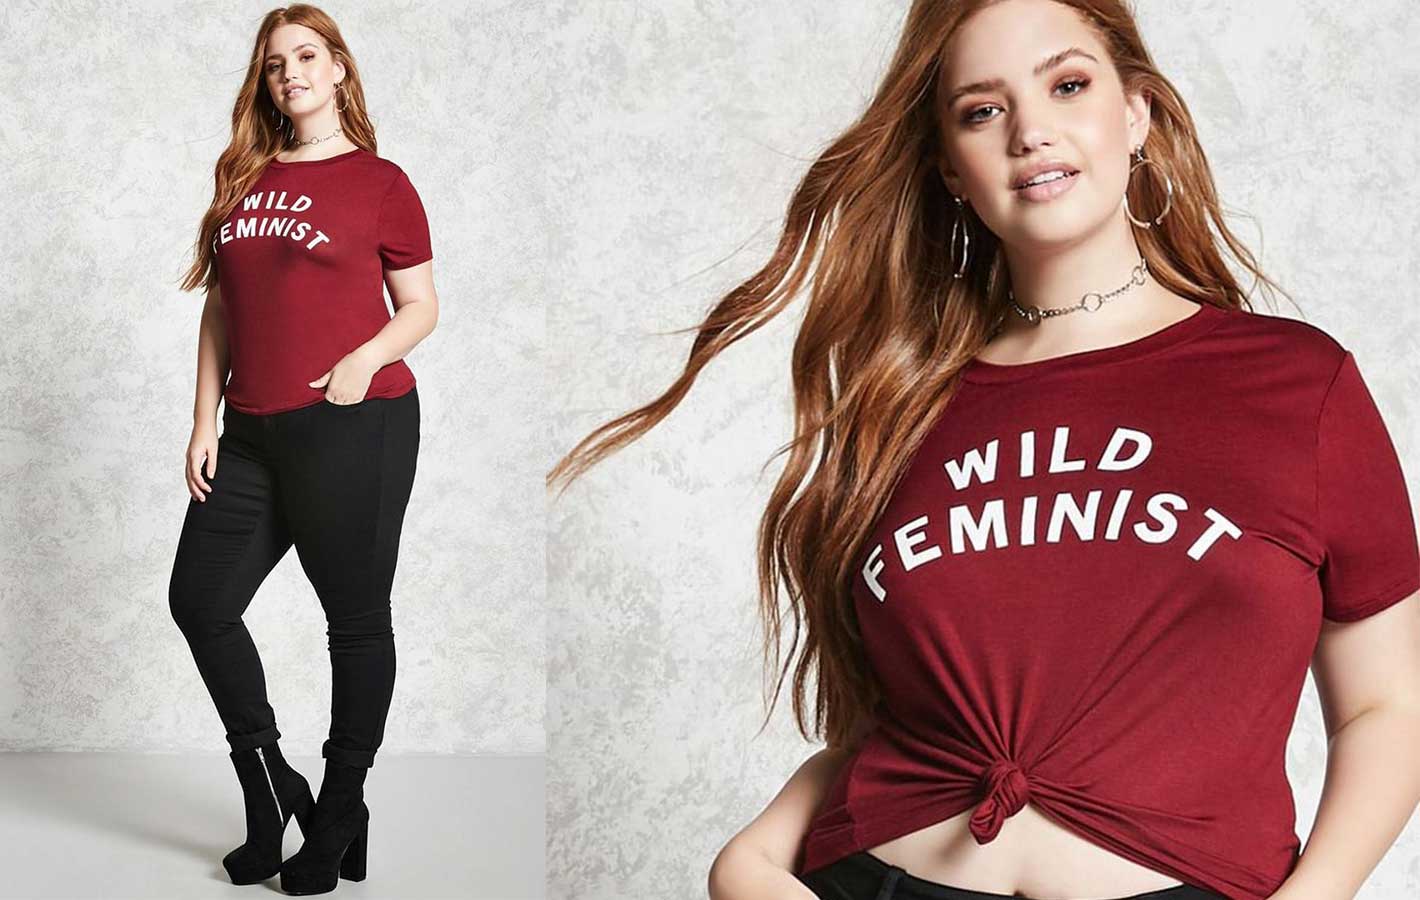 Ta koszulka Forever 21 „Wild Feminist” wzbudziła wiele emocji. Czy idee można opakować i sprzedawać w sieciówkach?